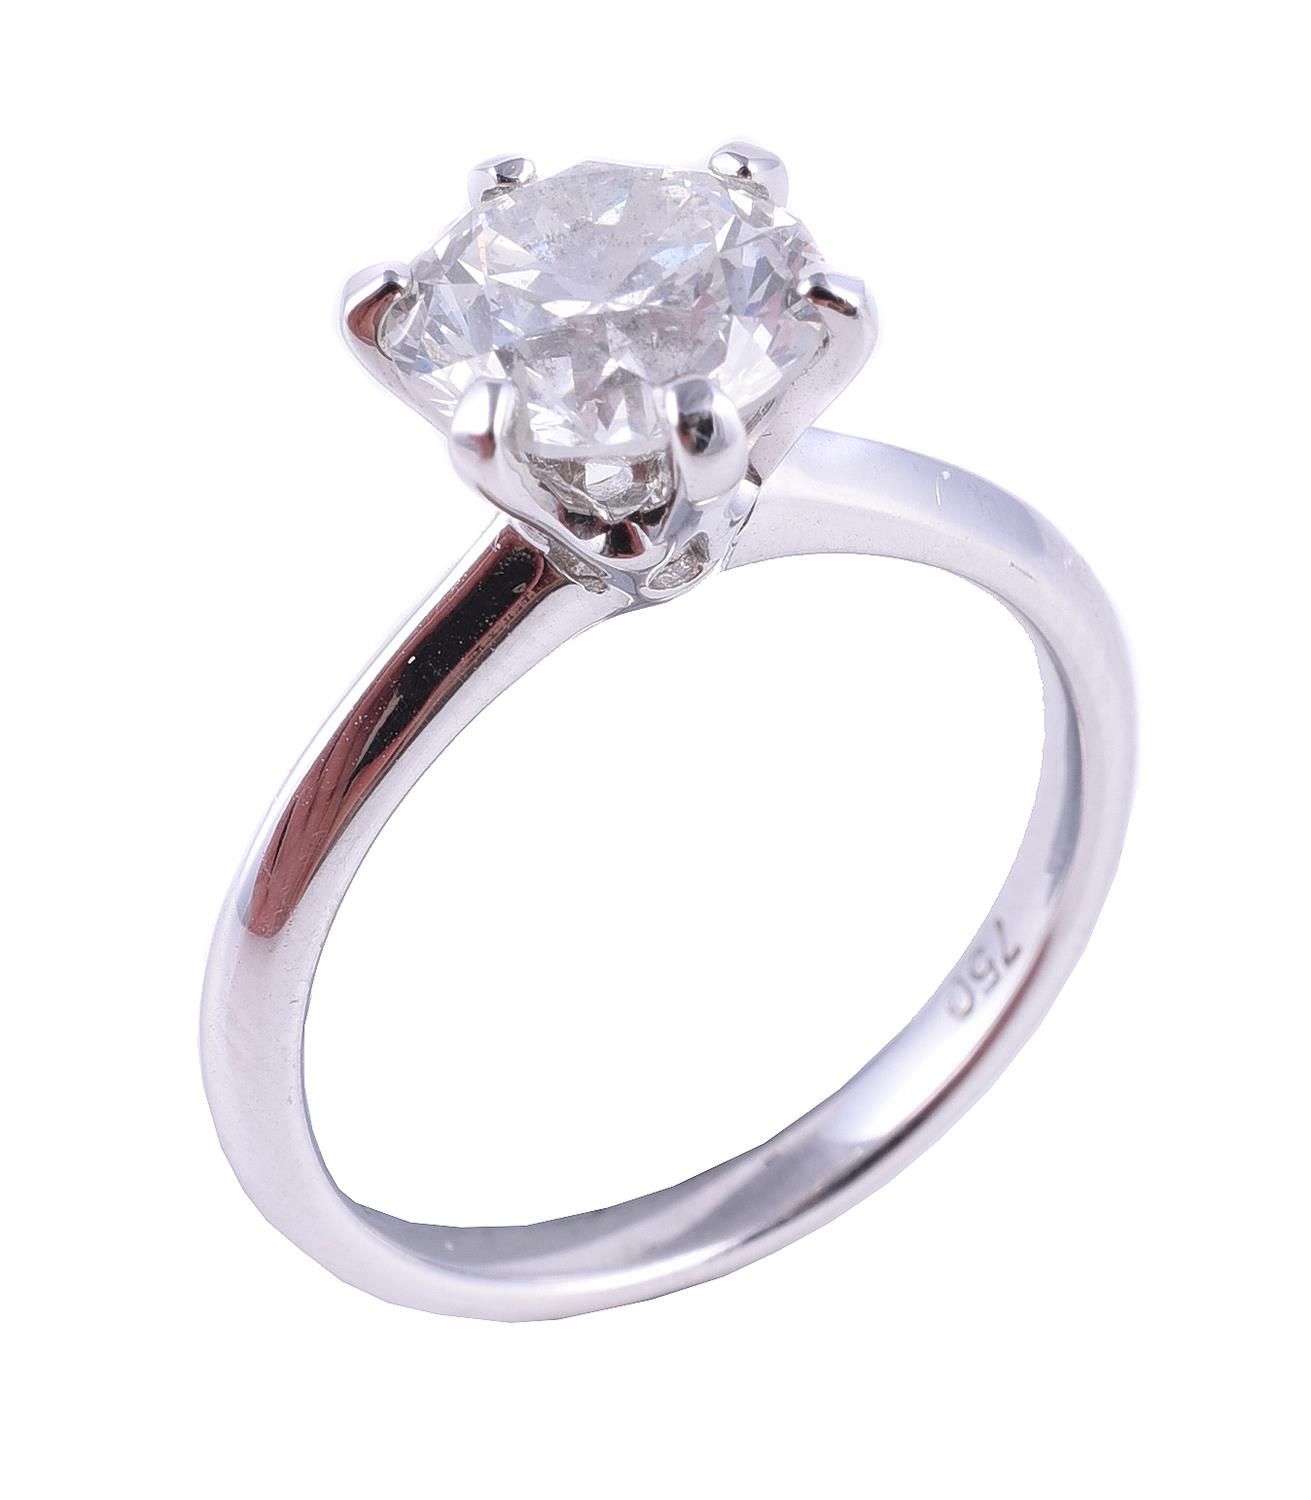 A single stone diamond ring 单石钻石戒指，明亮式切割钻石估计重2.07克拉，六爪镶嵌，手指尺寸M 1/2，毛重3.8克